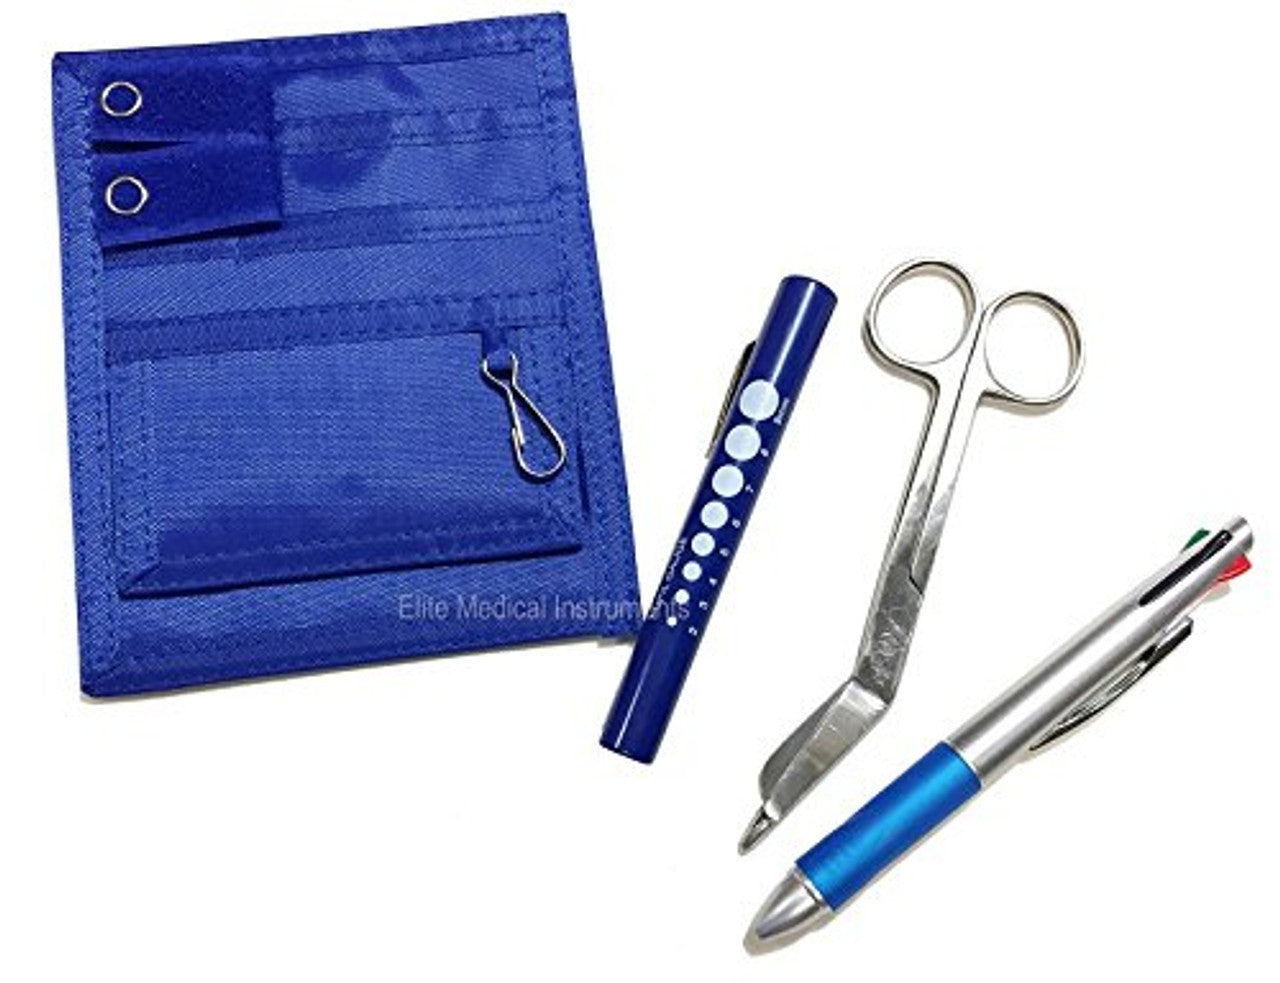 Royal Pocket Organizer Kit